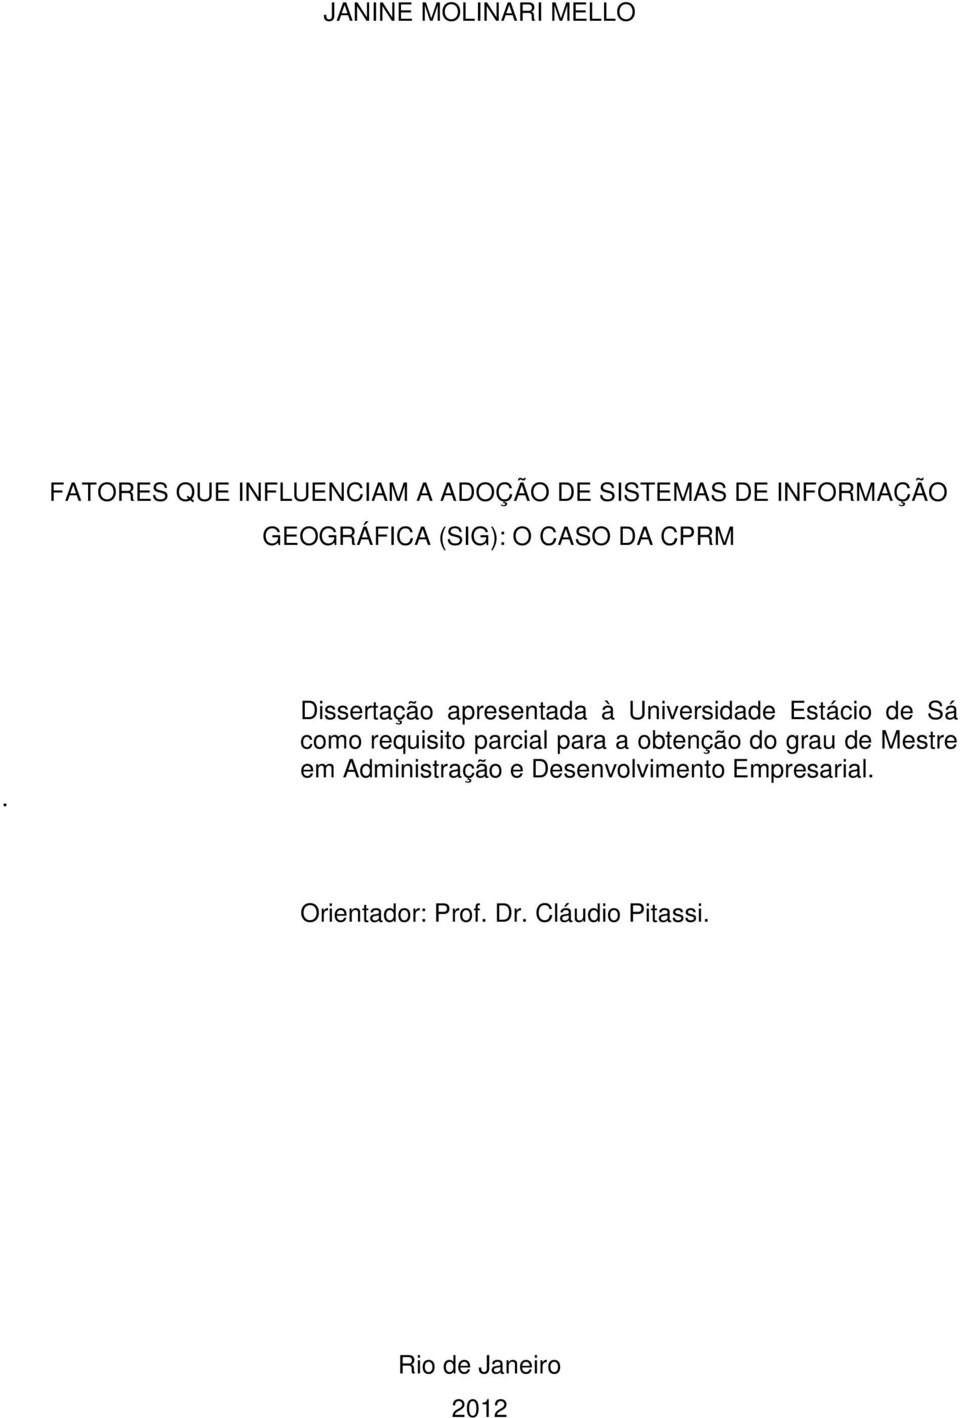 Dissertação apresentada à Universidade Estácio de Sá como requisito parcial para a